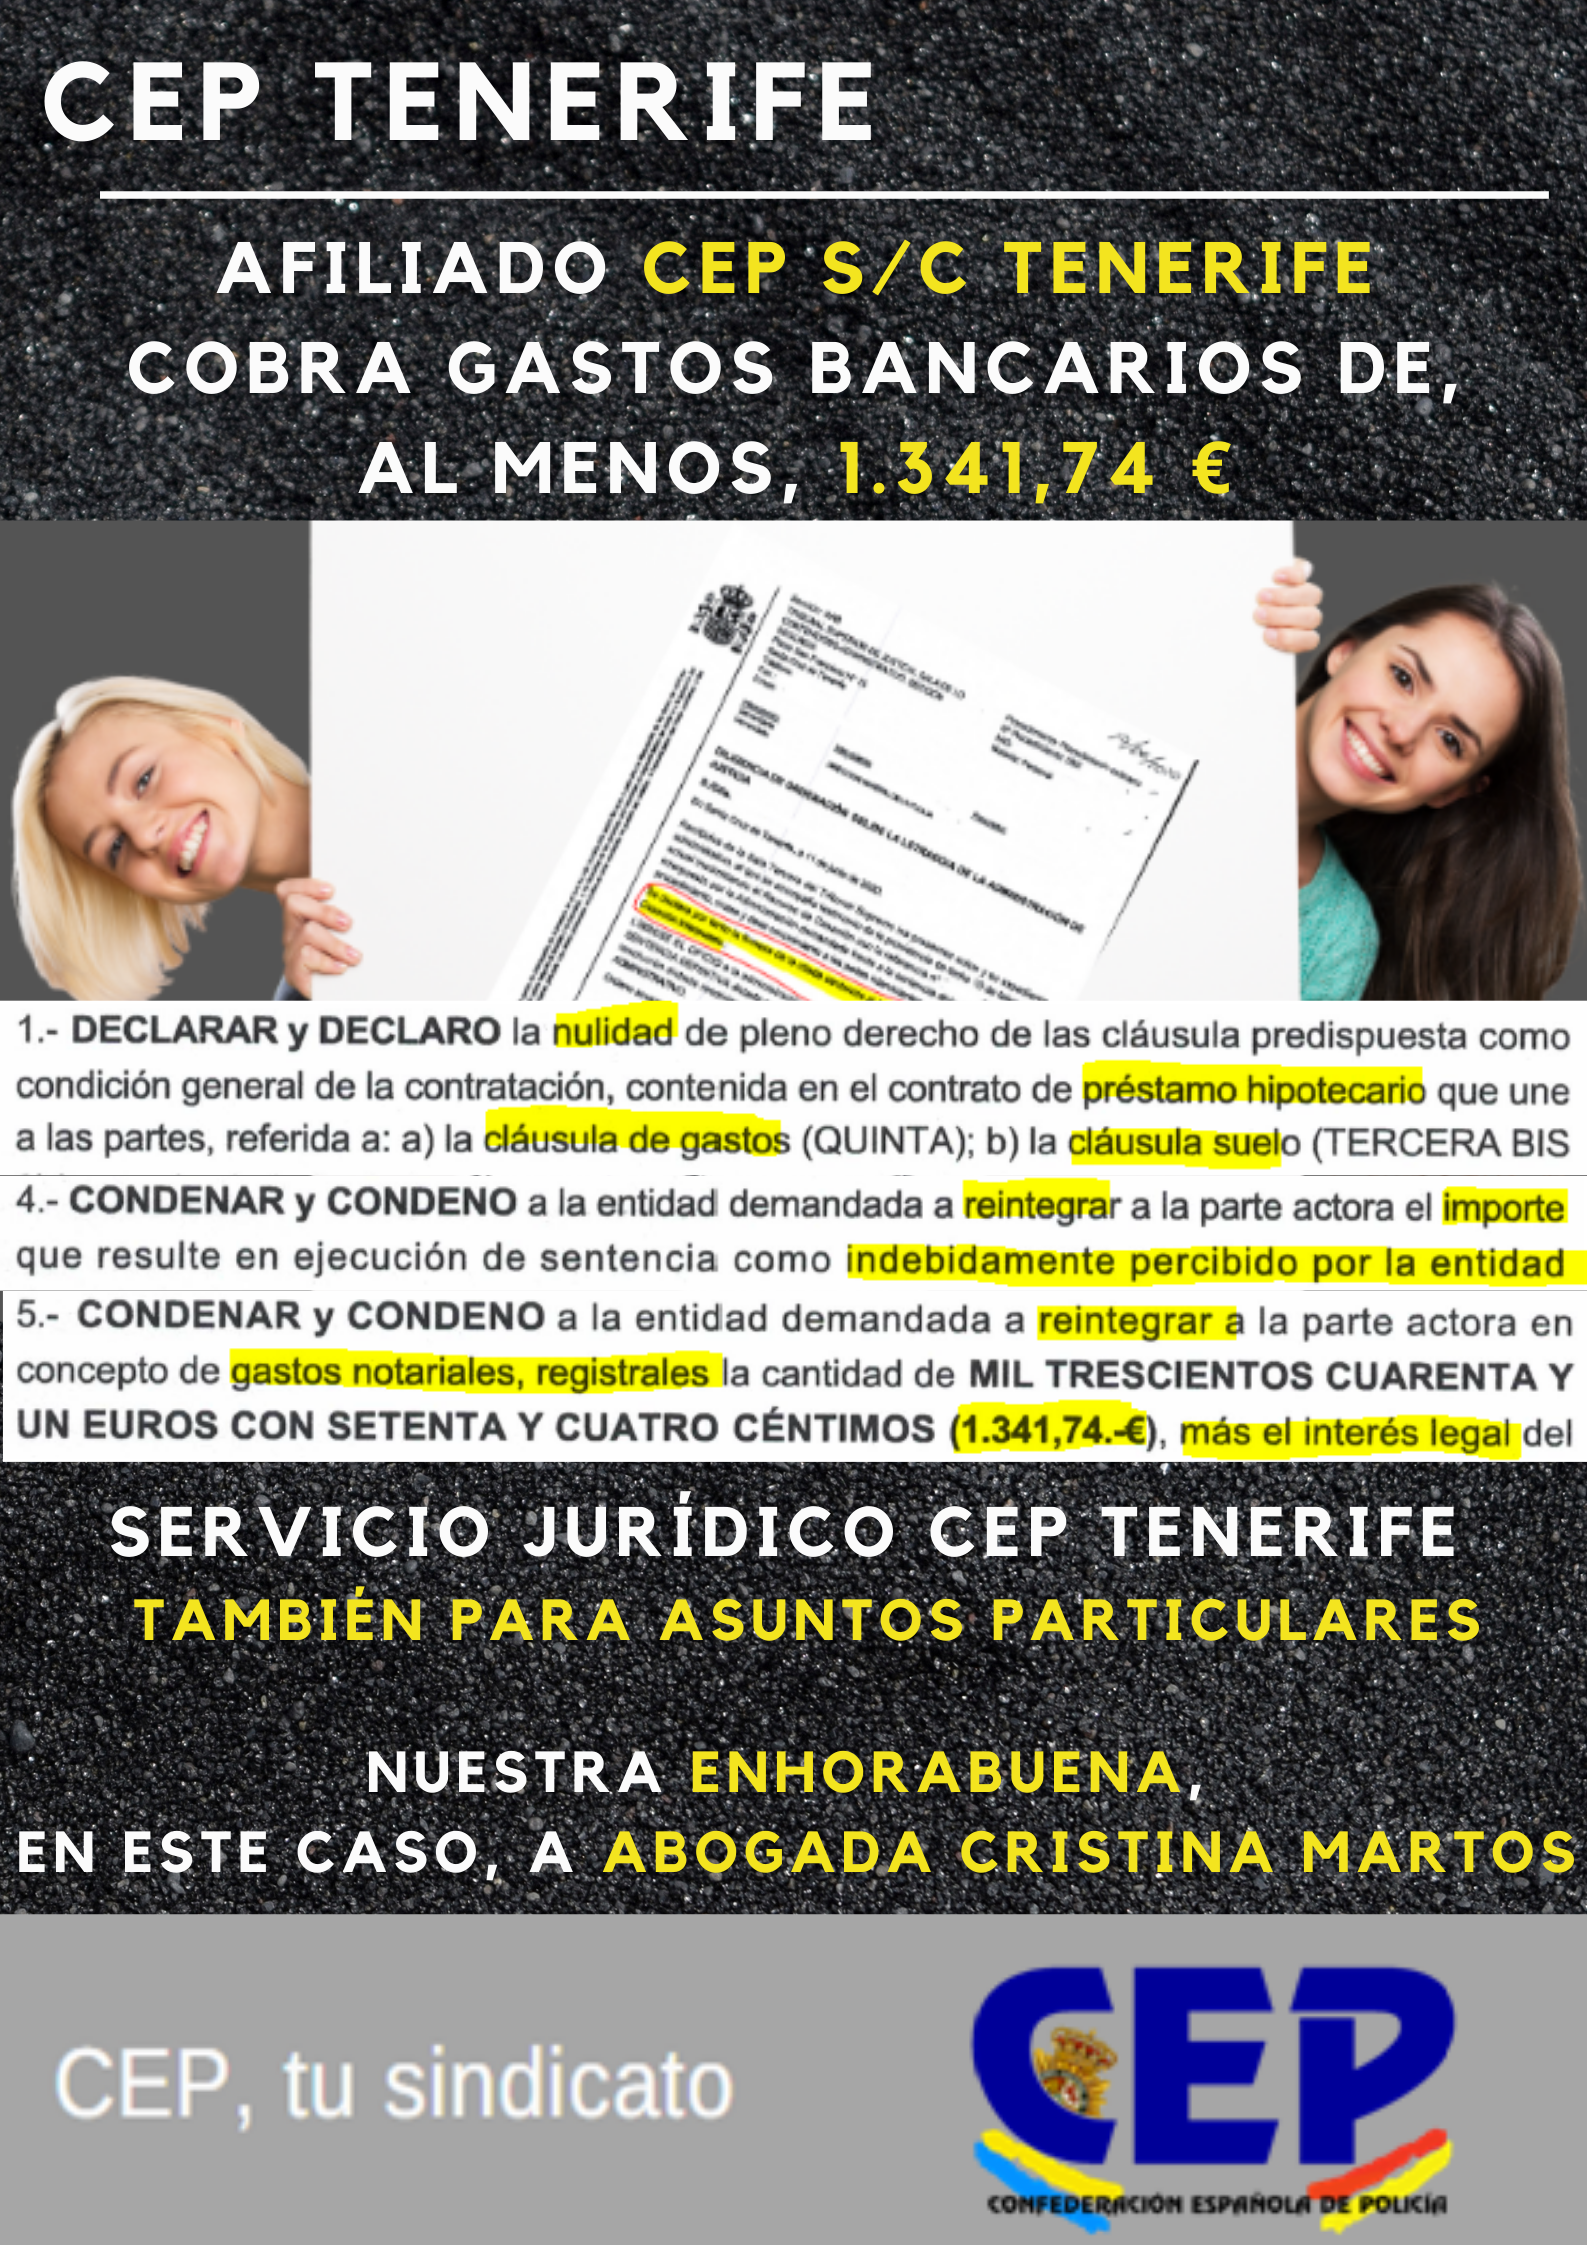 Servicio Jurídico. Afiliado cobra 1341 € por por gastos bancarios indebidos